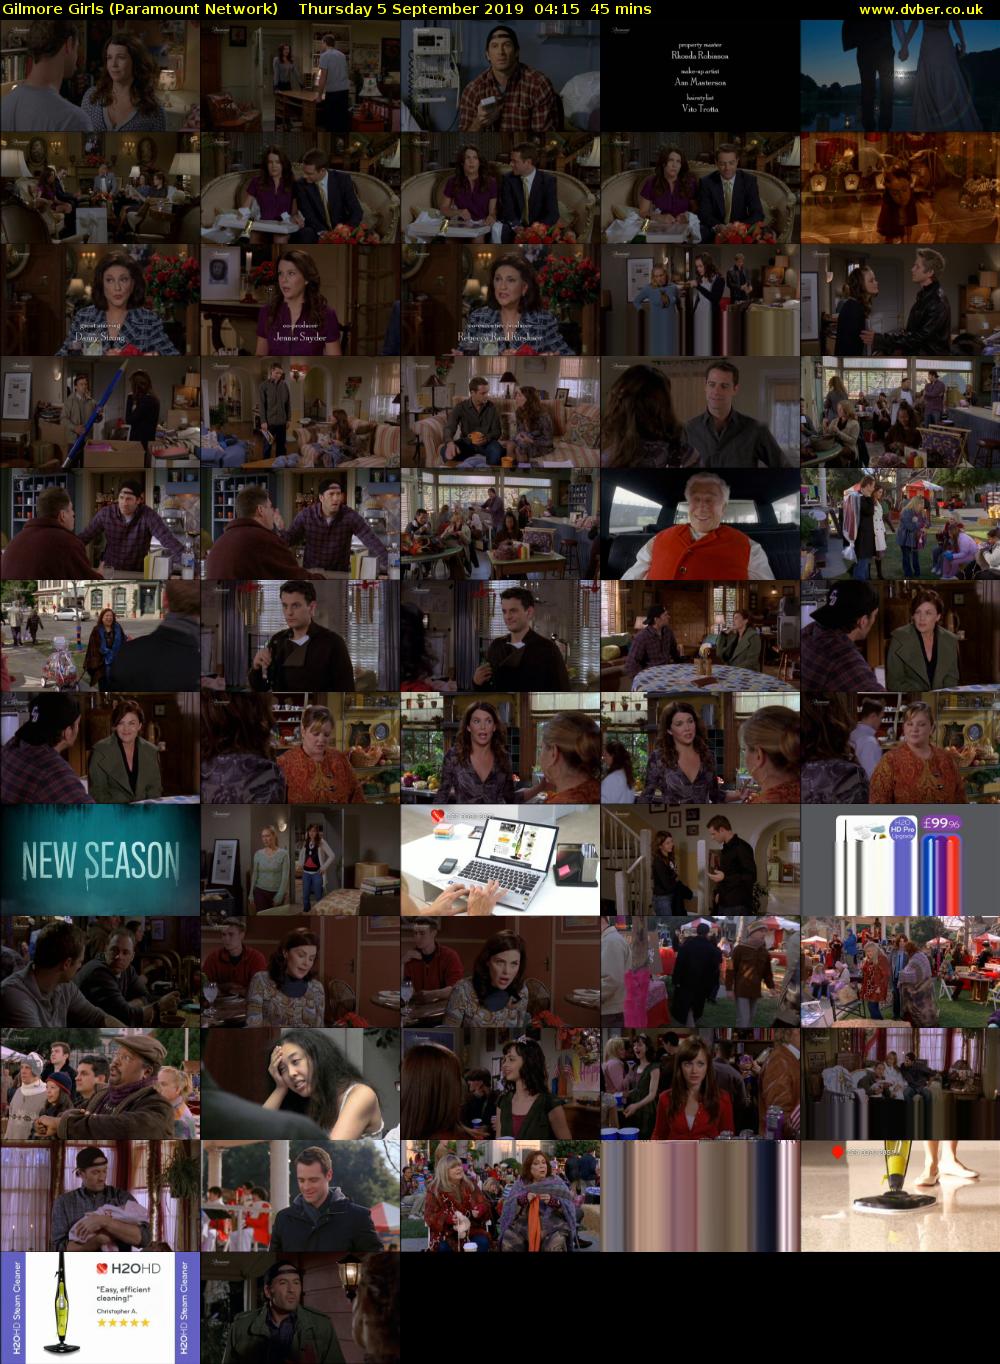 Gilmore Girls (Paramount Network) Thursday 5 September 2019 04:15 - 05:00